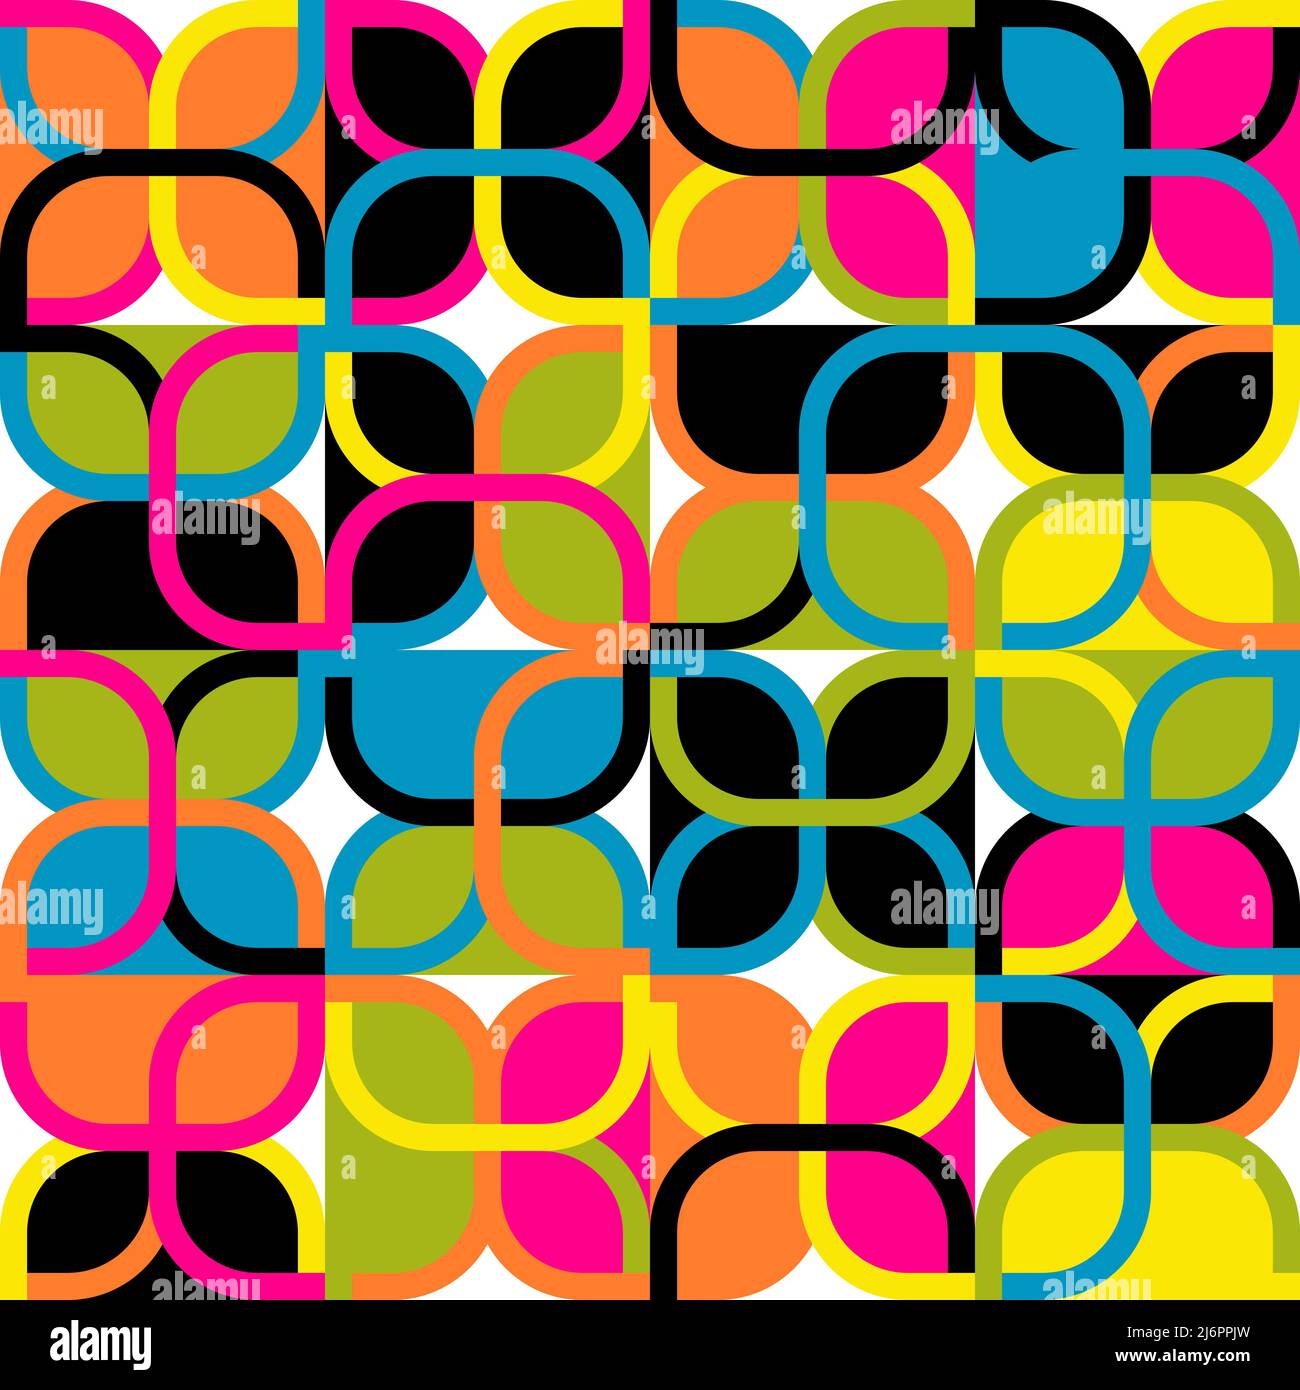 Motif vectoriel abstrait coloré composé de formes et d'éléments géométriques variés. Design graphique numérique pour poster, couverture, art, présentation Illustration de Vecteur